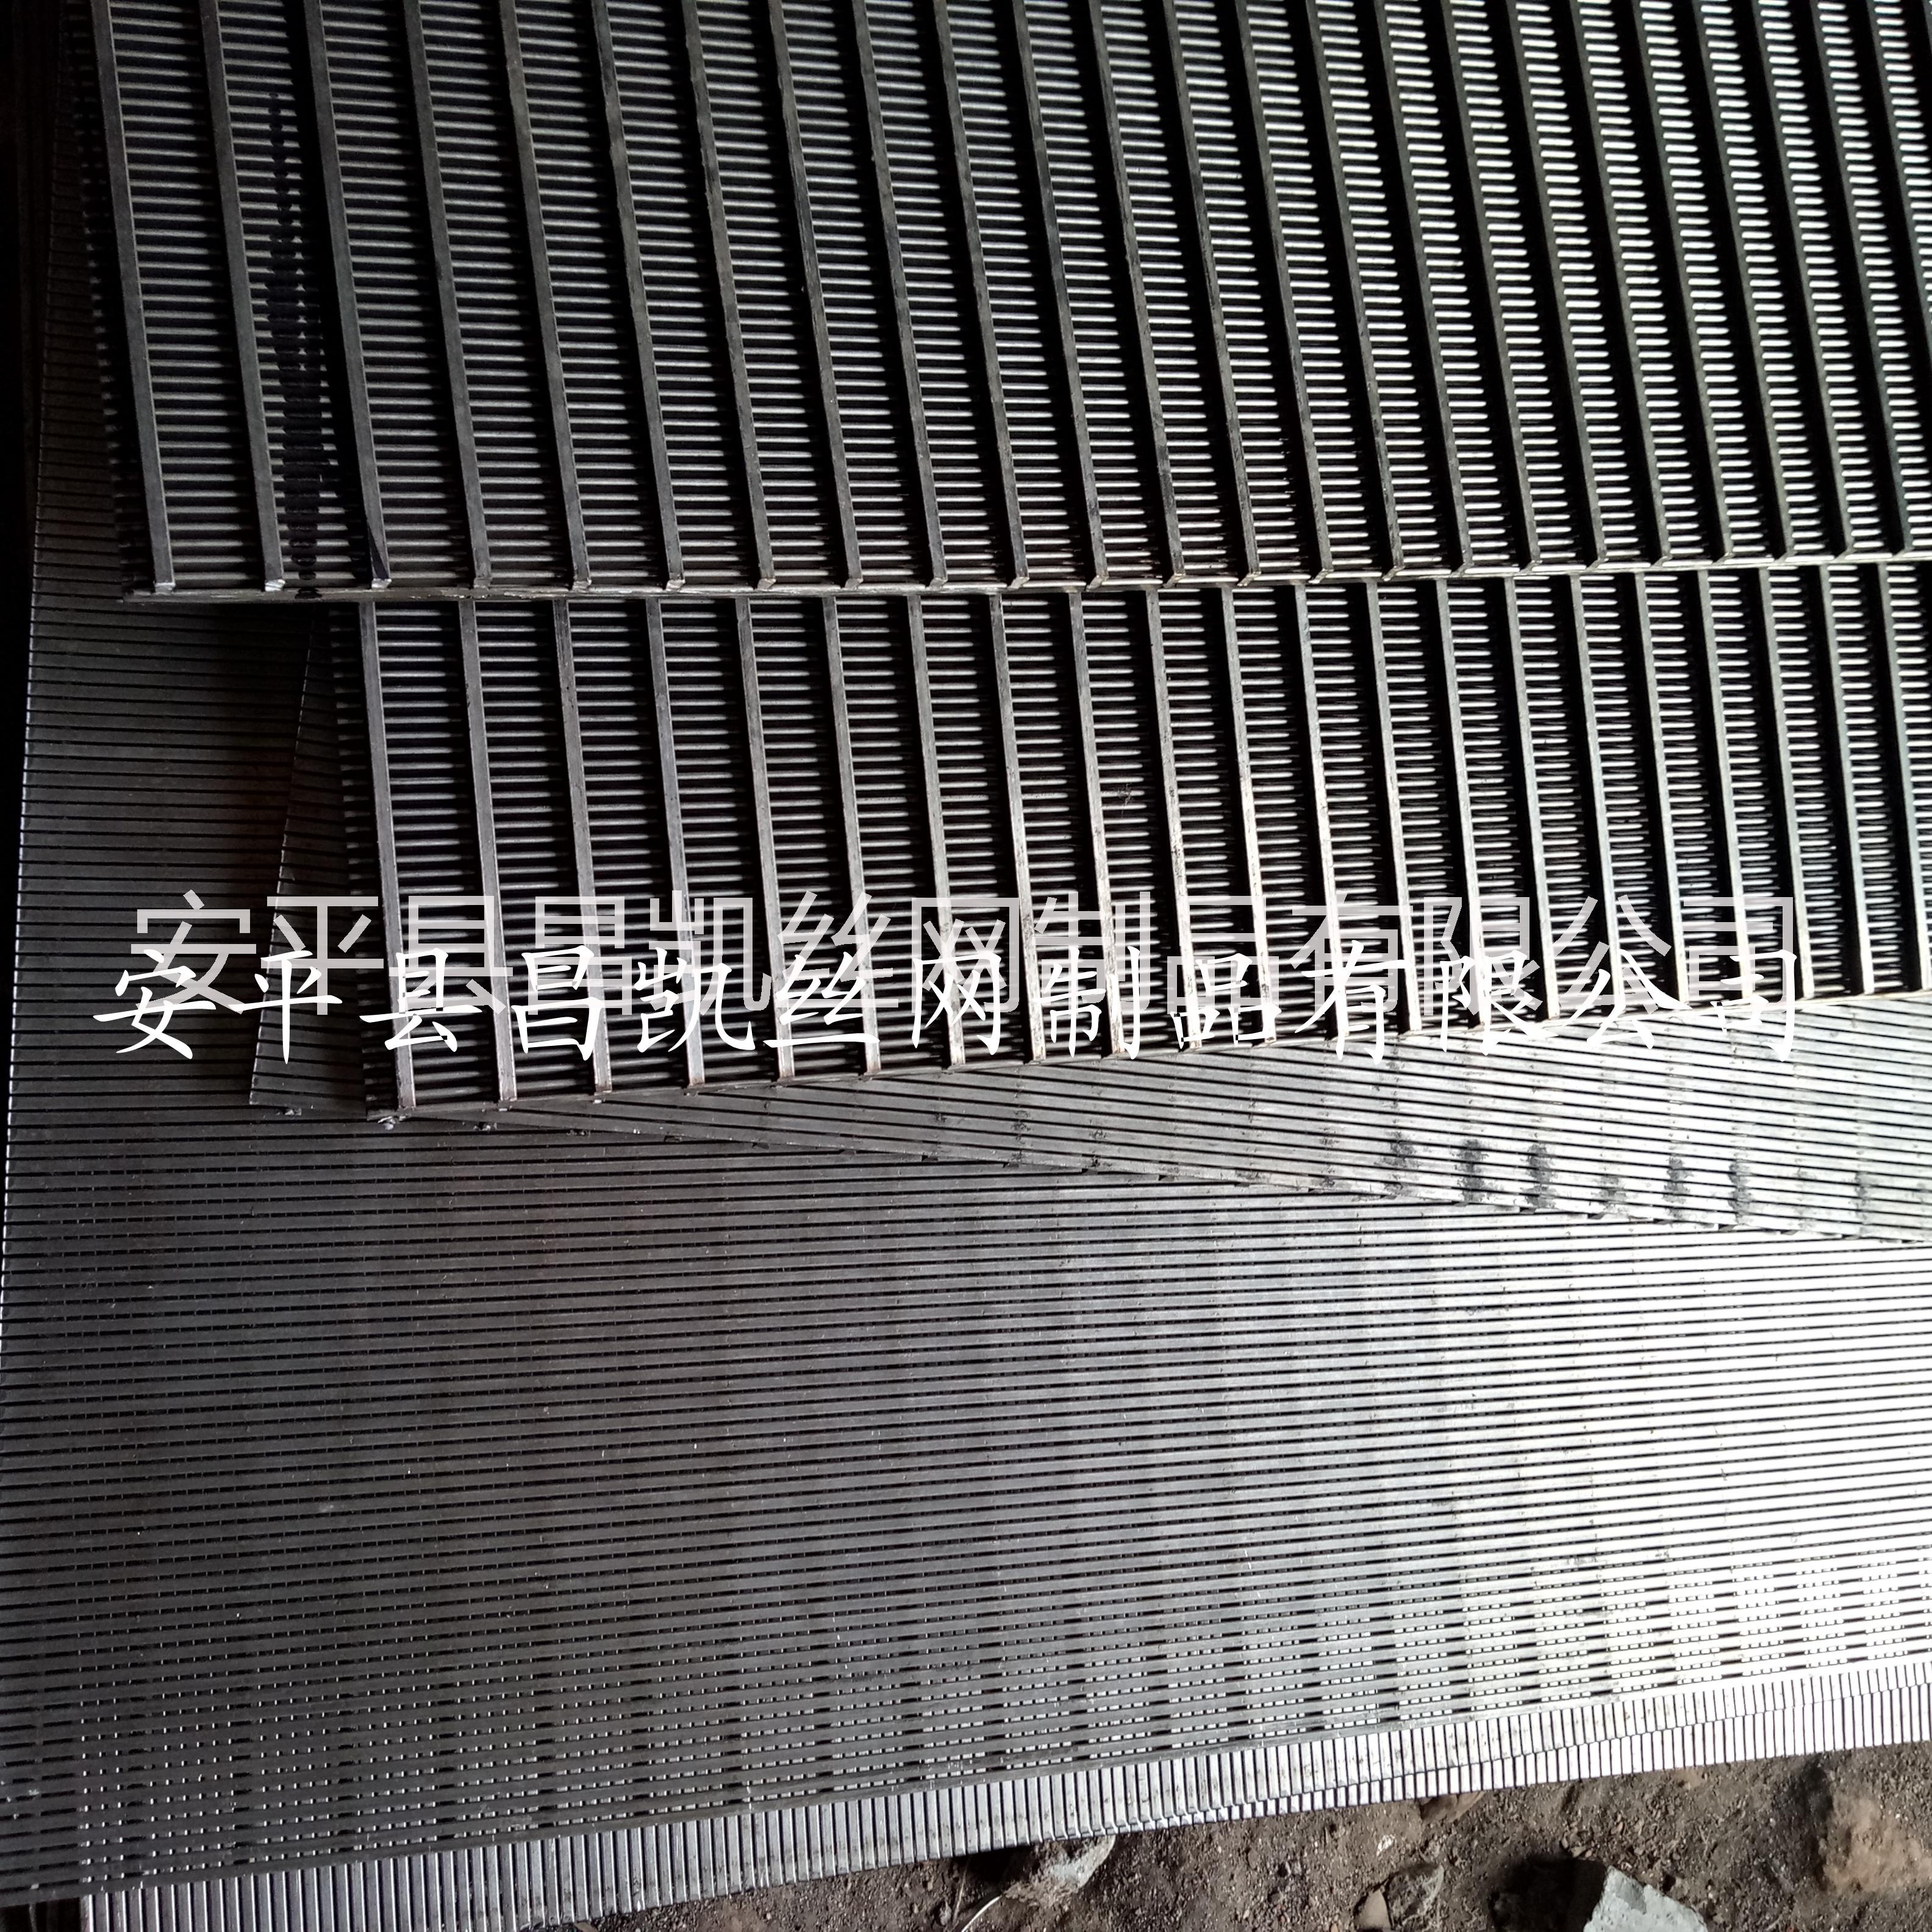 不锈钢焊接条缝筛批发价格生产厂家供应商 不锈钢焊接条缝筛网批发